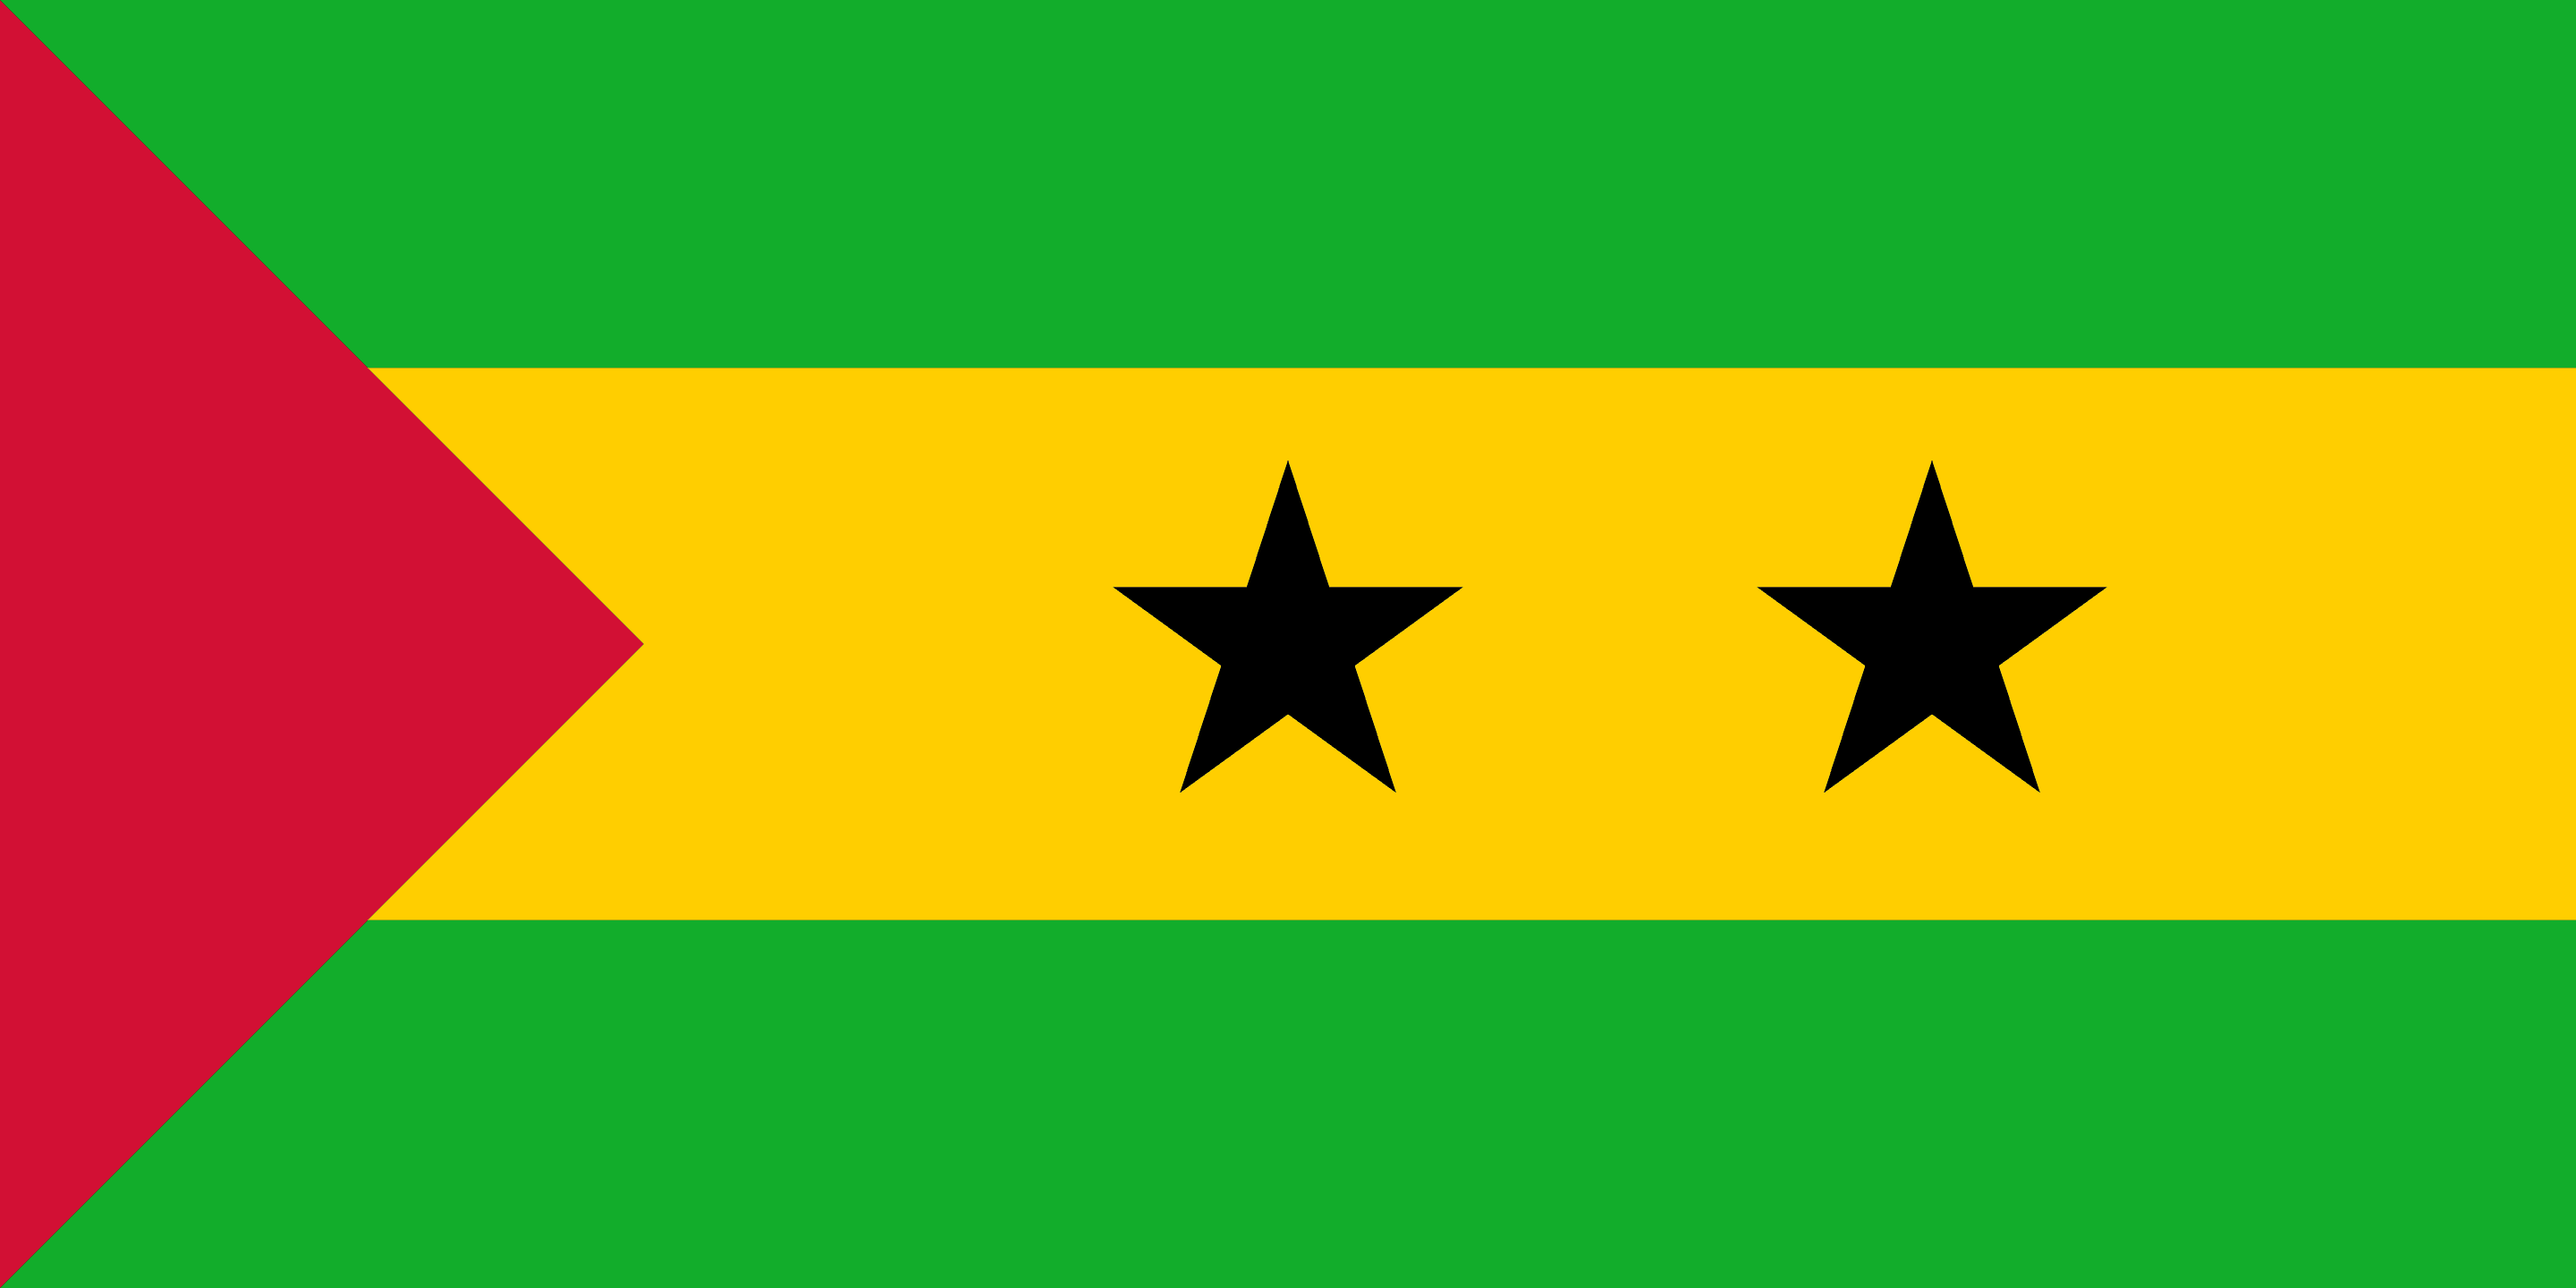 Democratic Republic of São Tomé and Príncipe Flag - Sao Tome and Principe Drone Laws